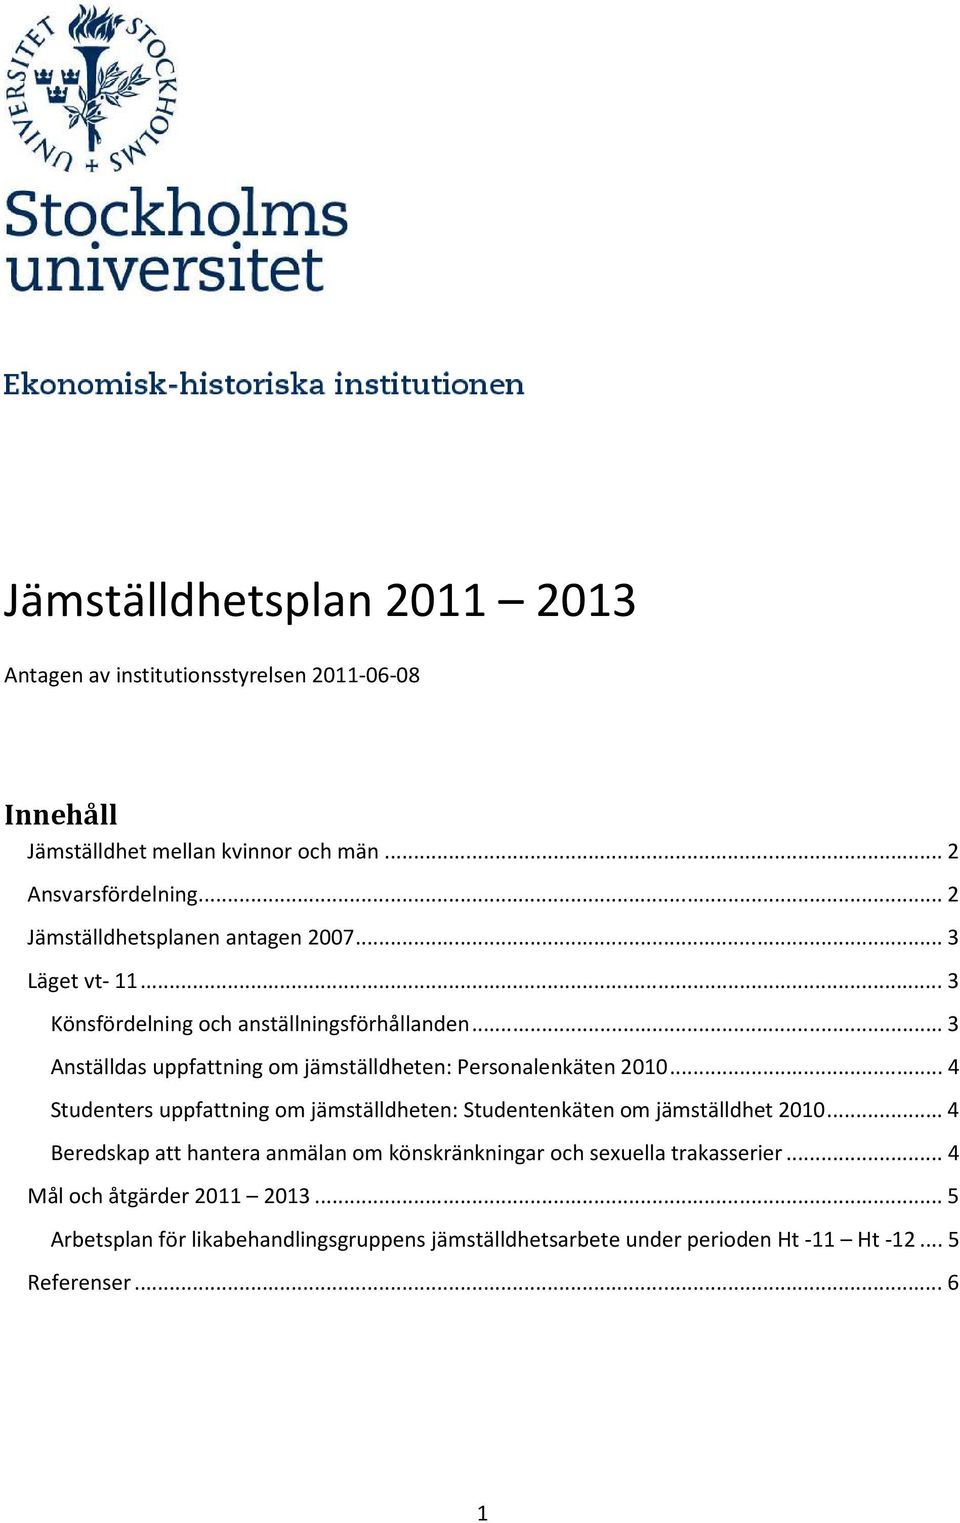 .. 3 Anställdas uppfattning om jämställdheten: Personalenkäten 2010... 4 Studenters uppfattning om jämställdheten: Studentenkäten om jämställdhet 2010.